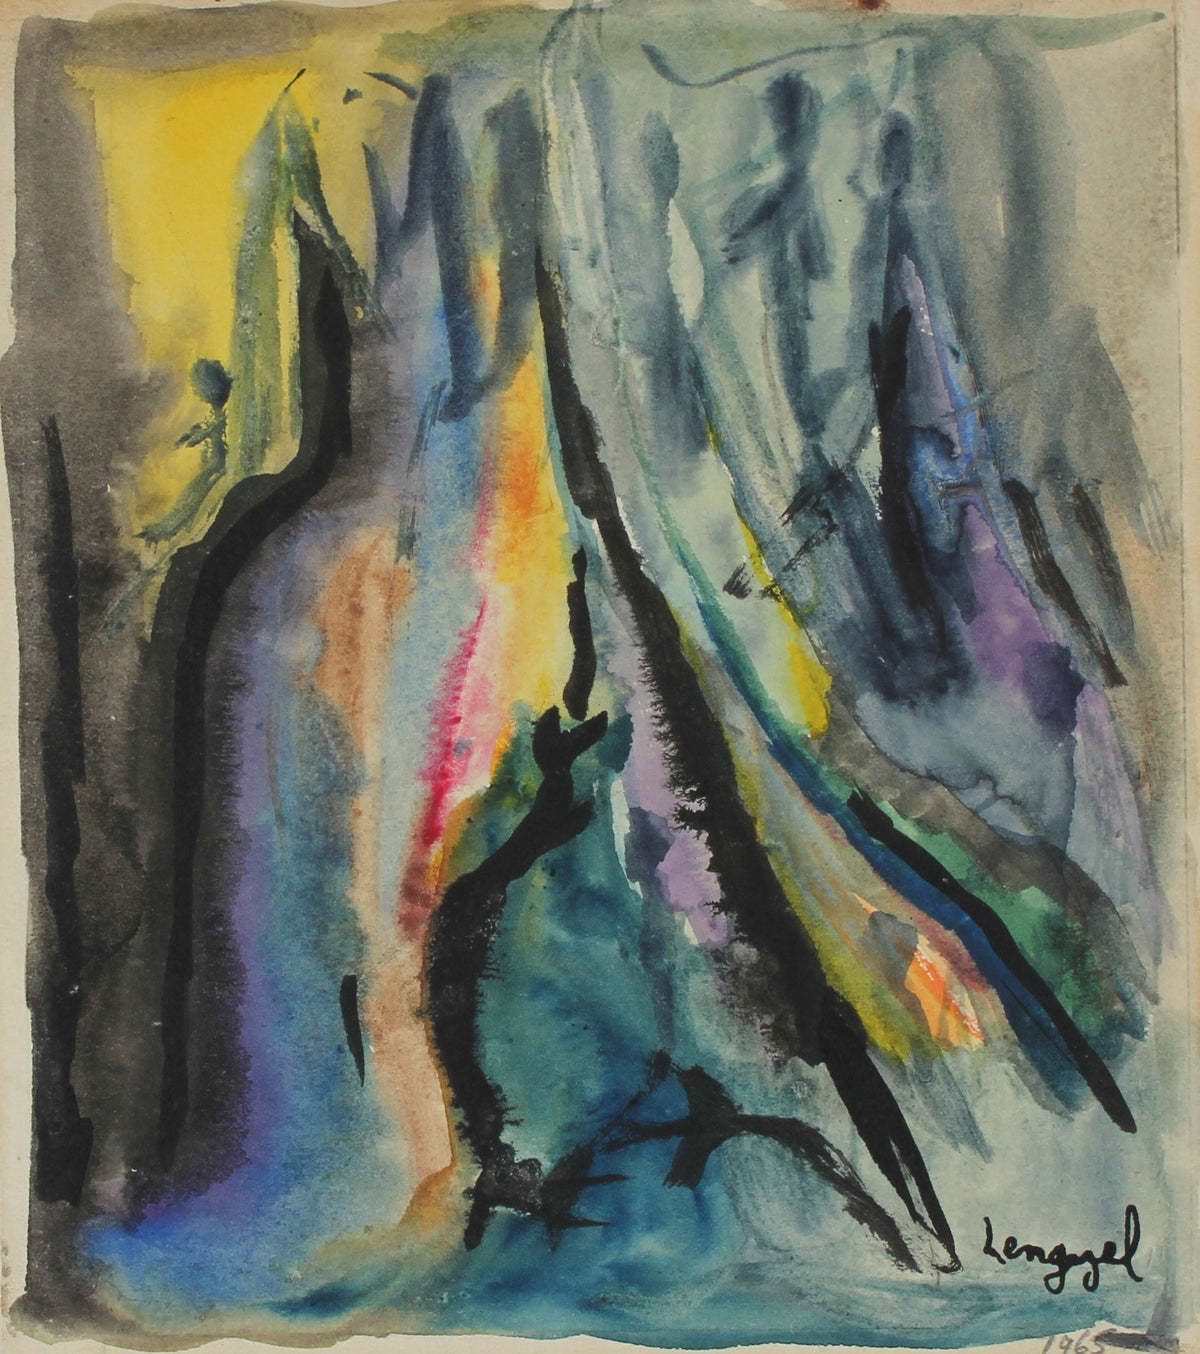 &lt;I&gt;May in the Elements&lt;/I&gt; &lt;br&gt;1965 Watercolor &lt;br&gt;&lt;br&gt;#56770